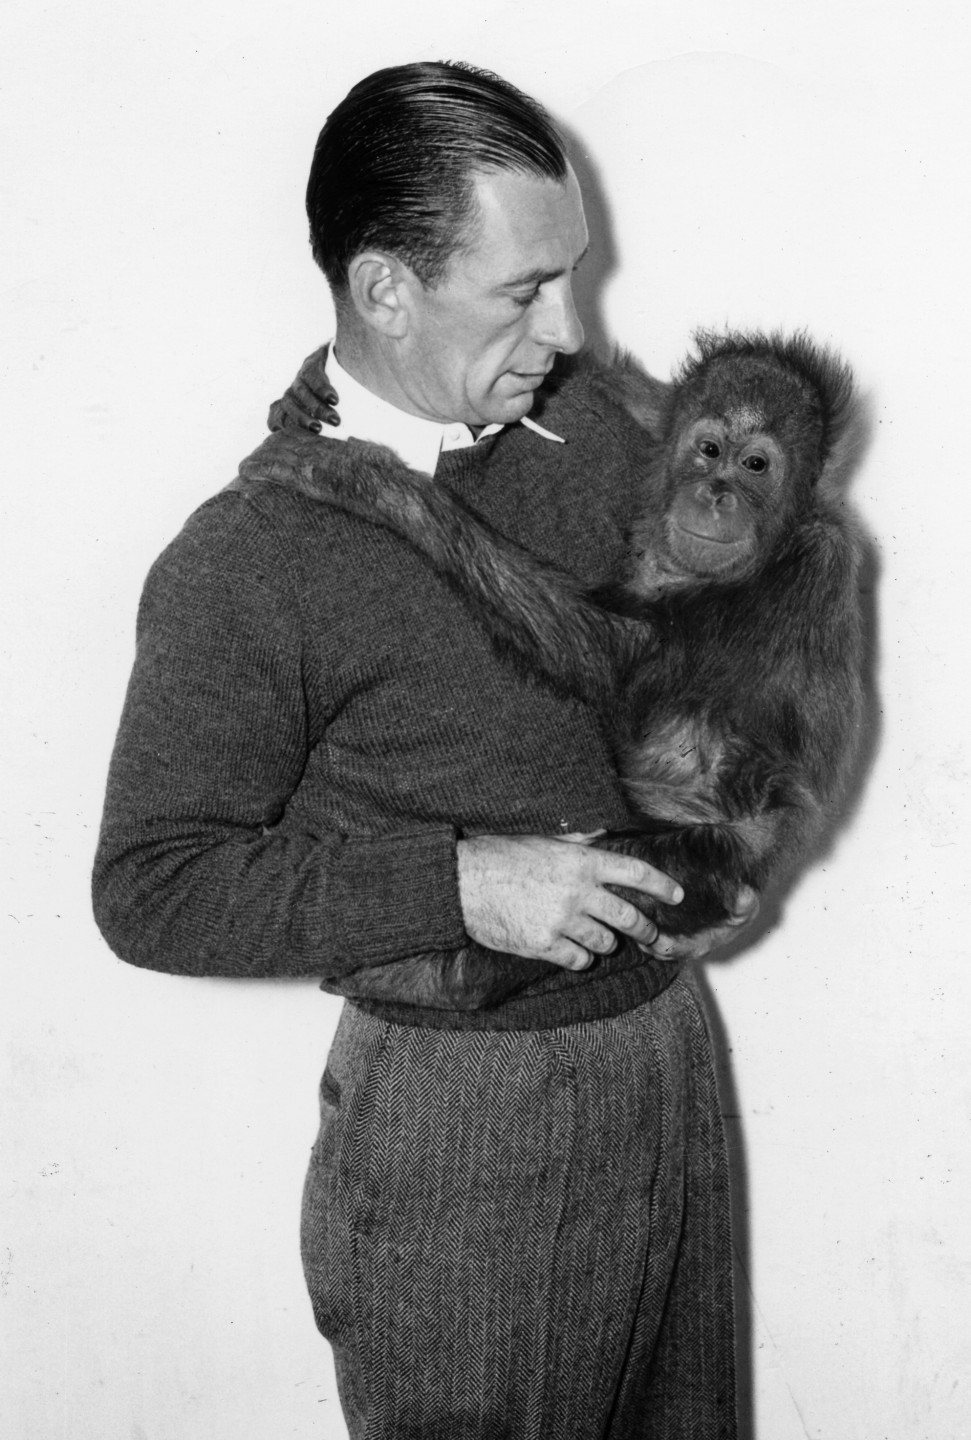 San Diego Zoo keeper Howard Lee with a young orangutan.